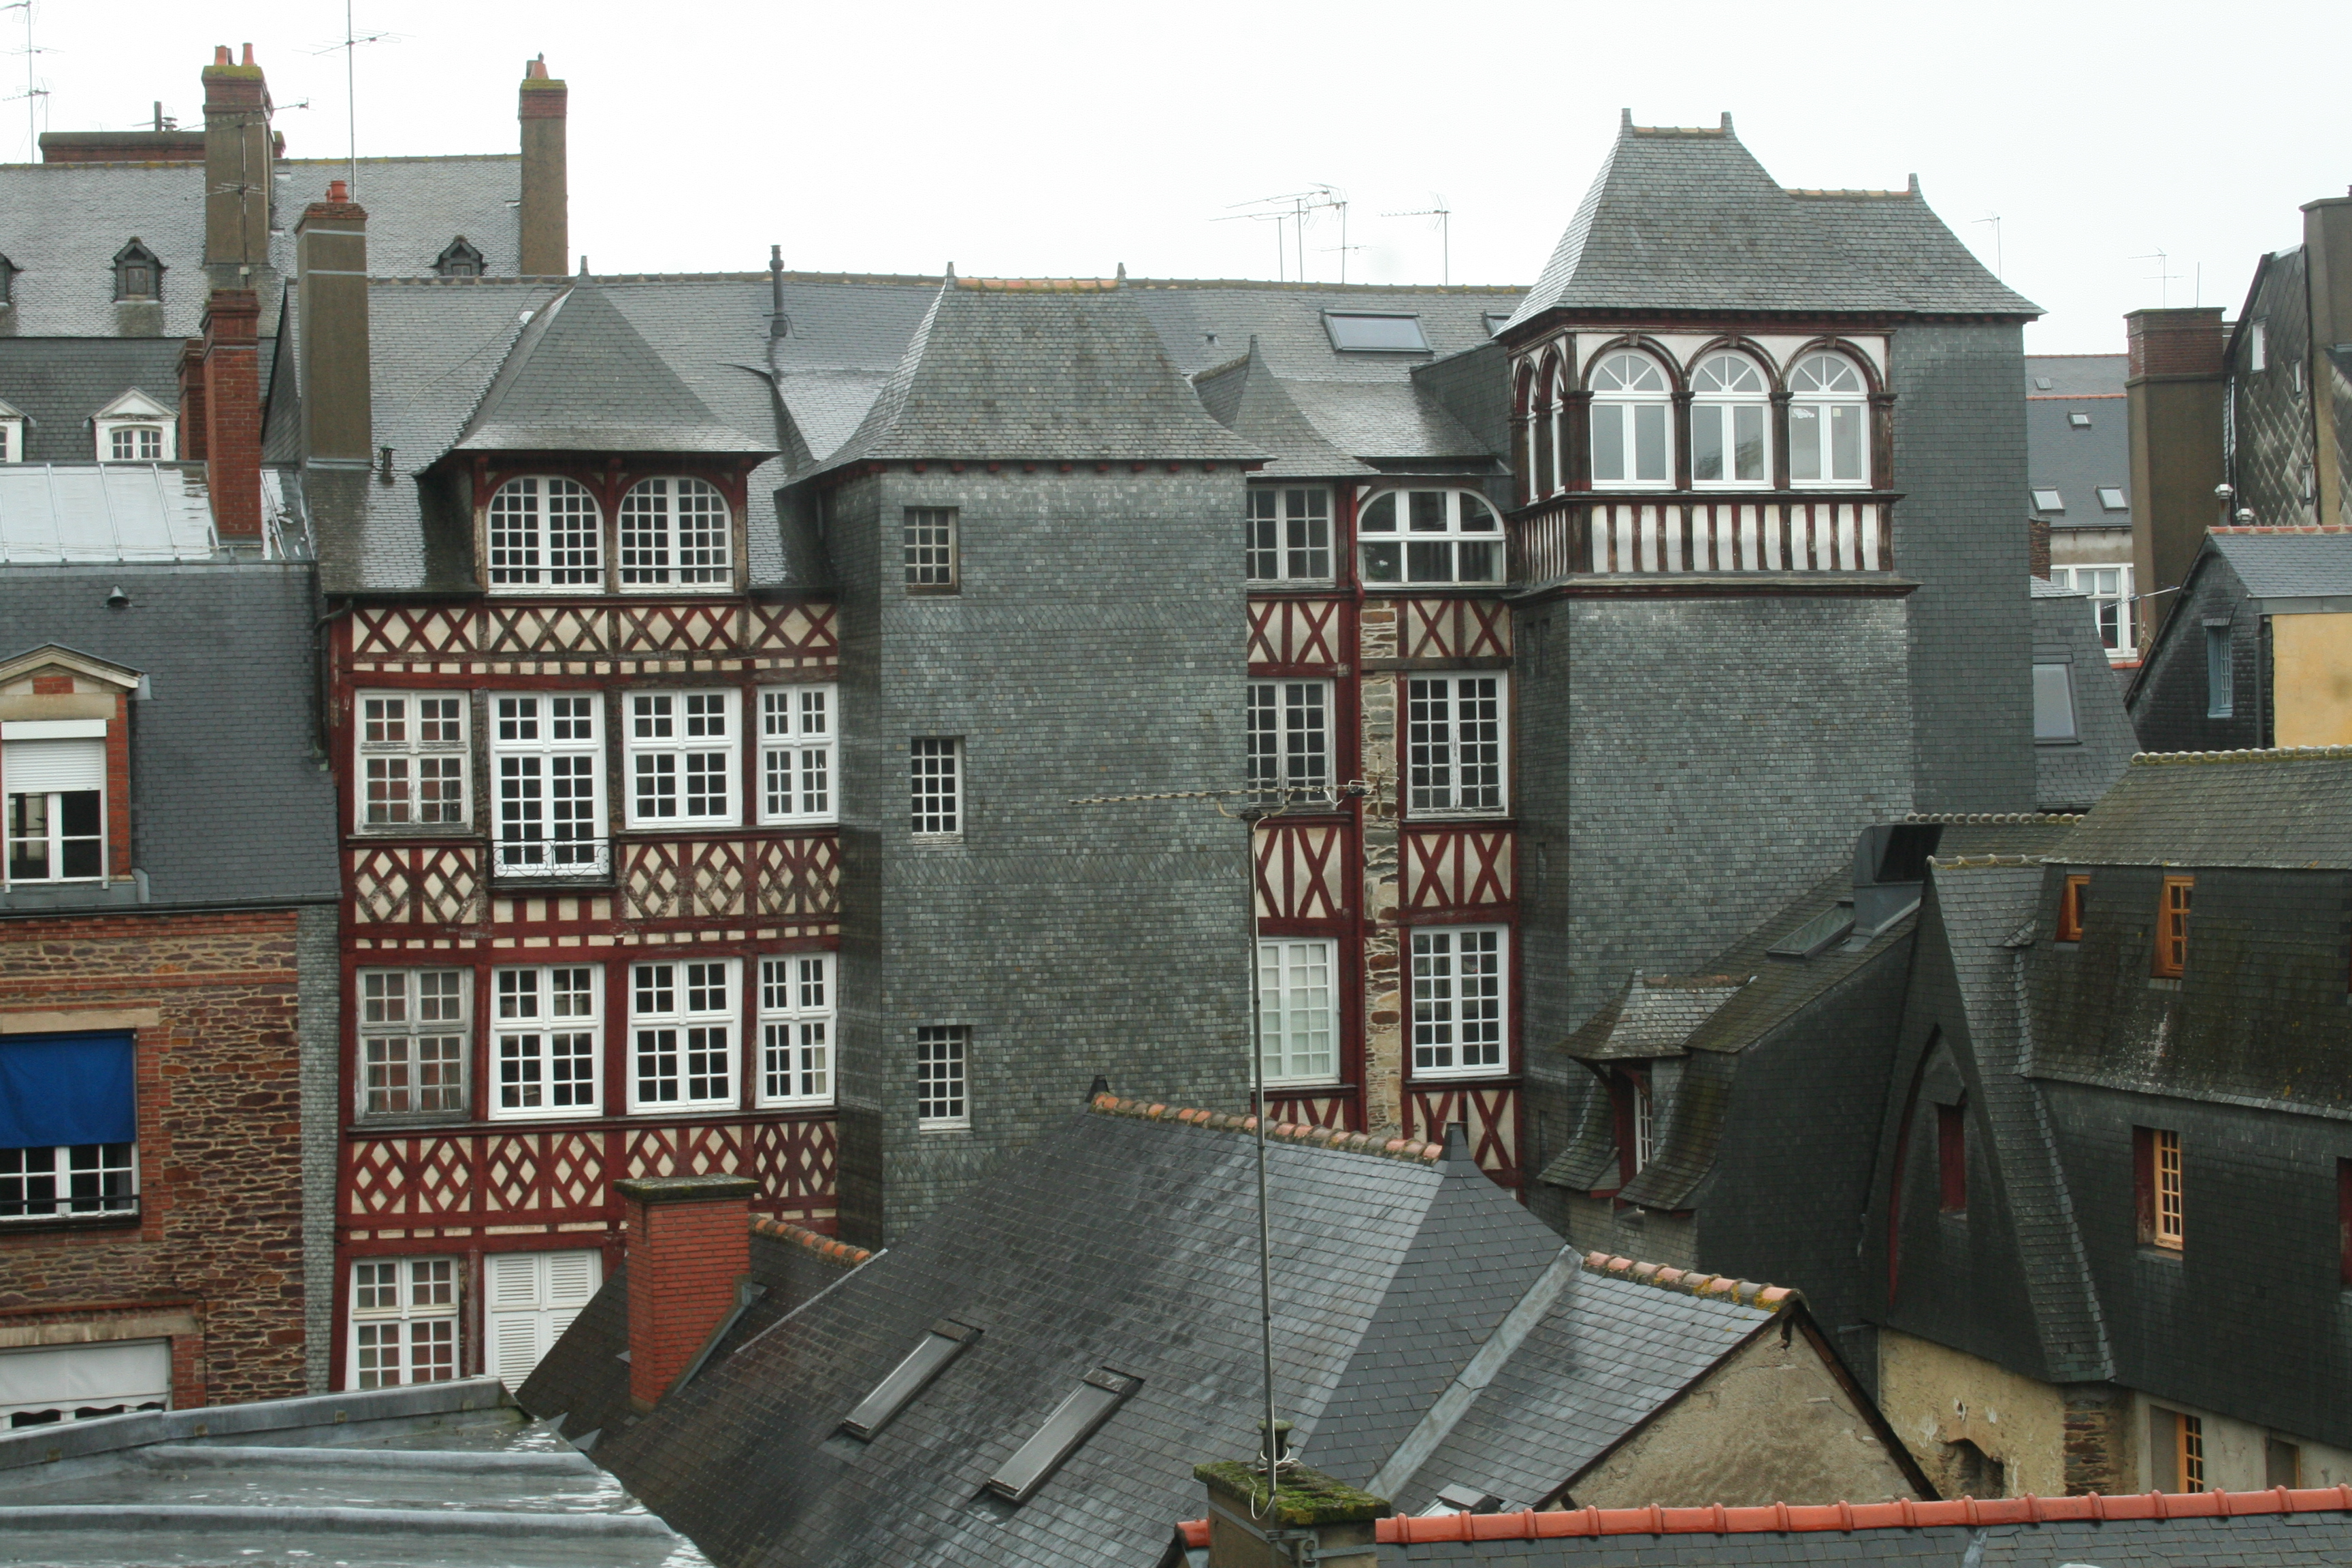 L'ardoise, par sa résistance, est beaucoup utilisée comme matériau de couverture. Ici, on peut voir des bardages et des toits constitués d'ardoise à Rennes. © Coyau, CC BY-SA 3.0, Wikimedia Commons